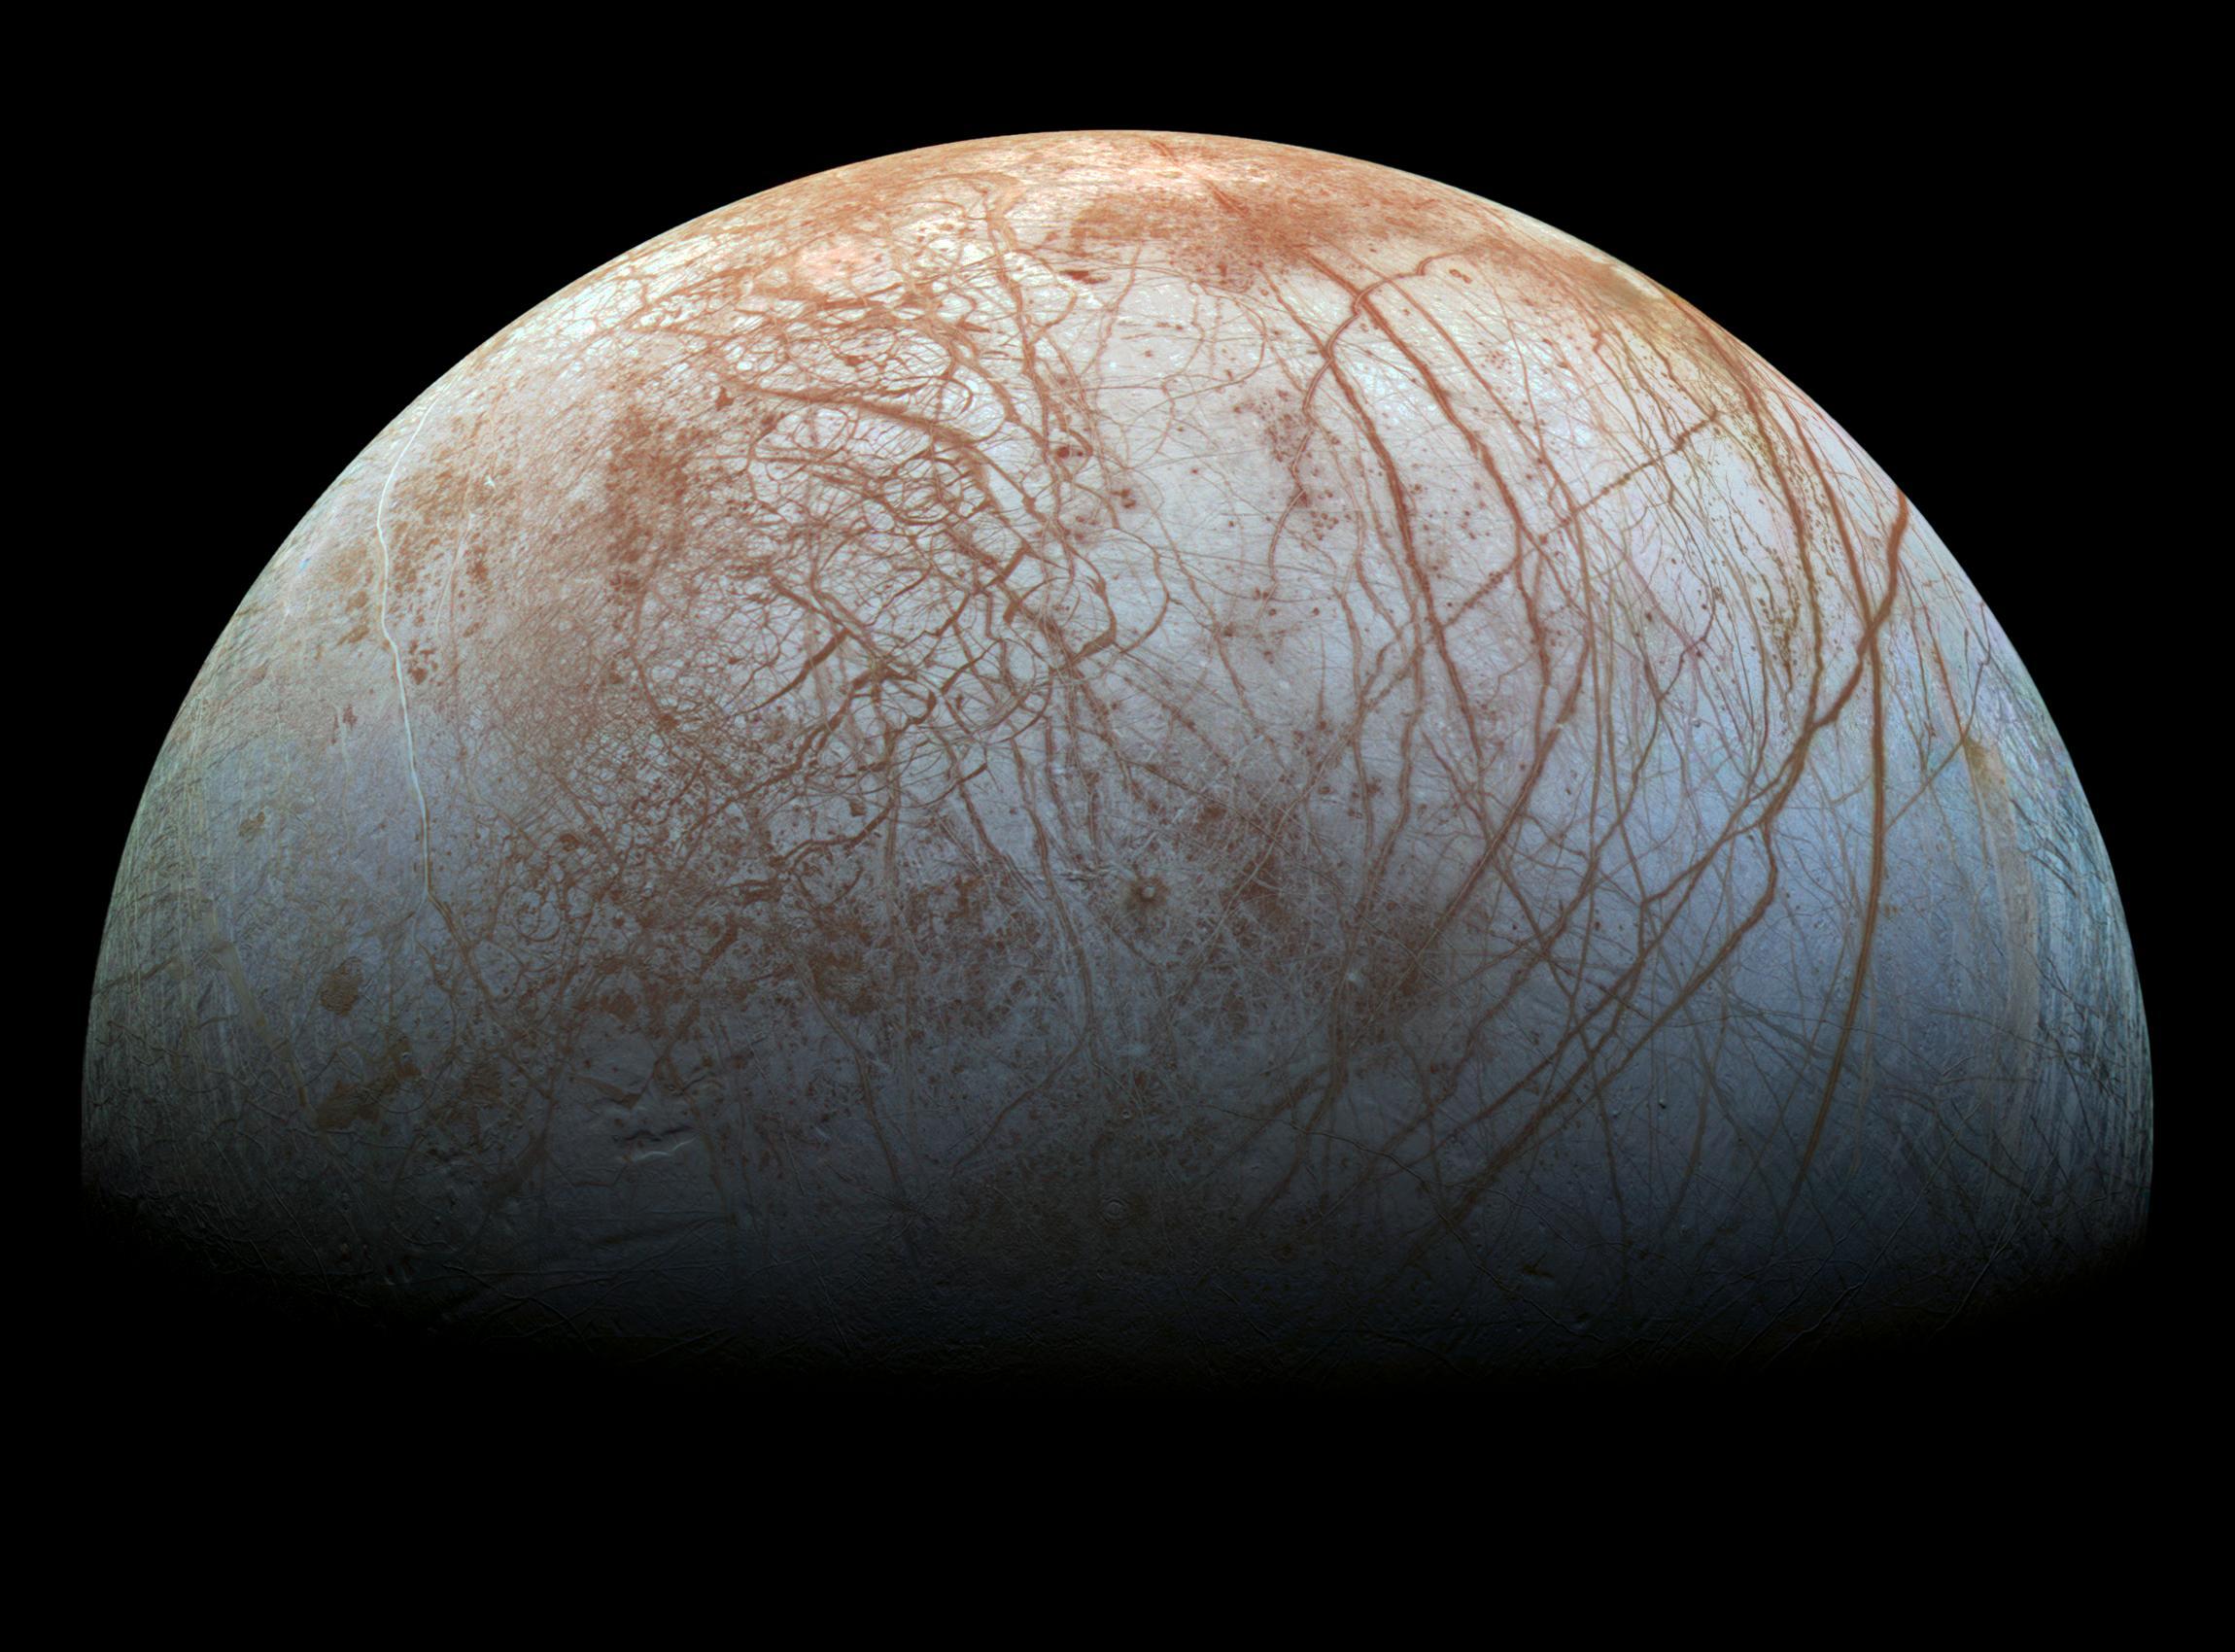 صورة محسّنة لنصف قمر المشتري گاليليو، يظهر فيها سطحه مخطط بصدوع طويلة منحنية محمرة.